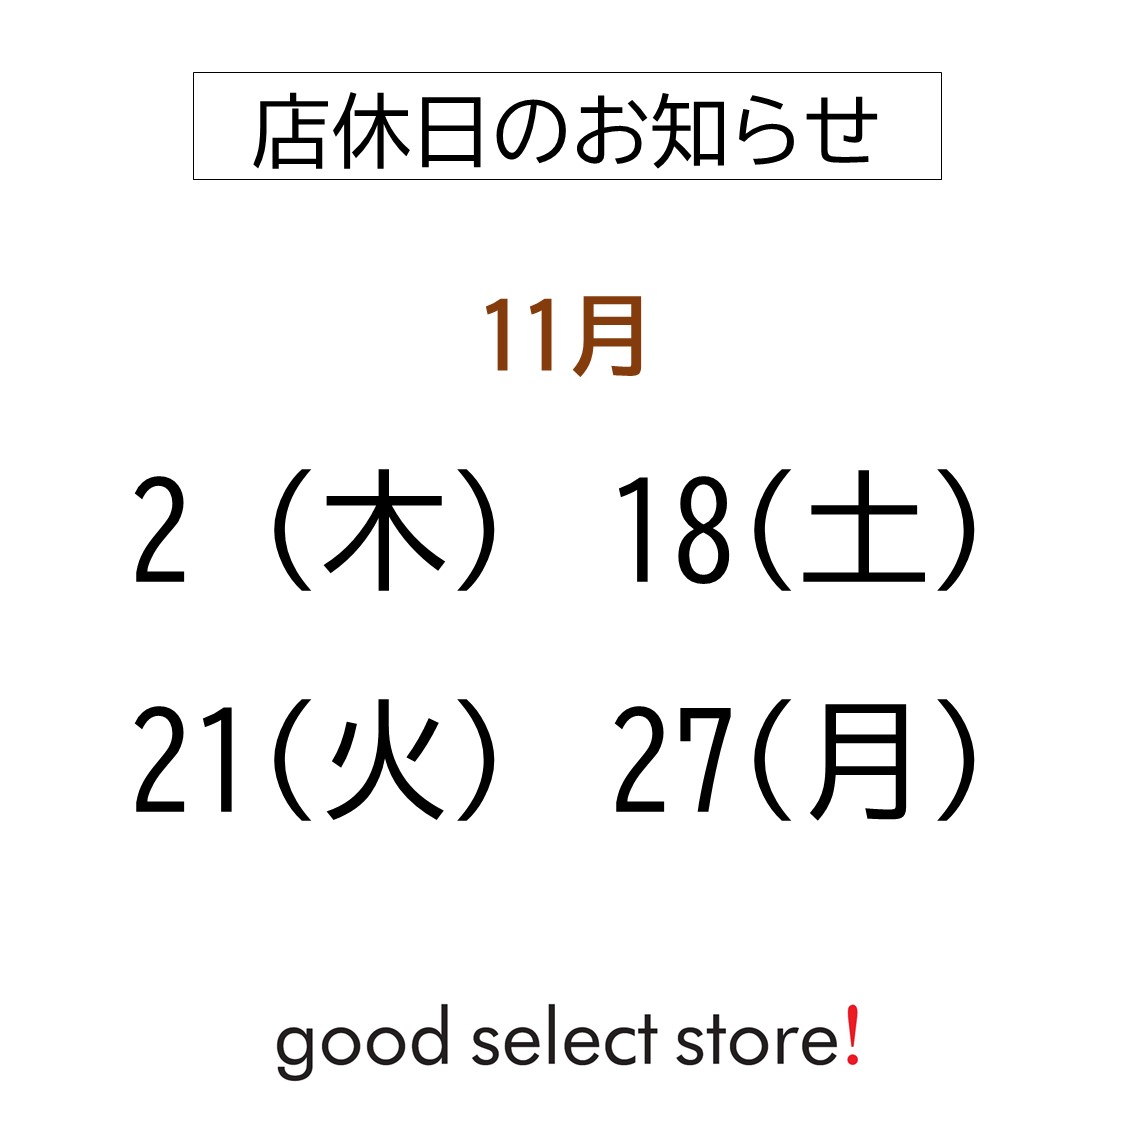 定休日のお知らせ（11月）【2F・good select store!】